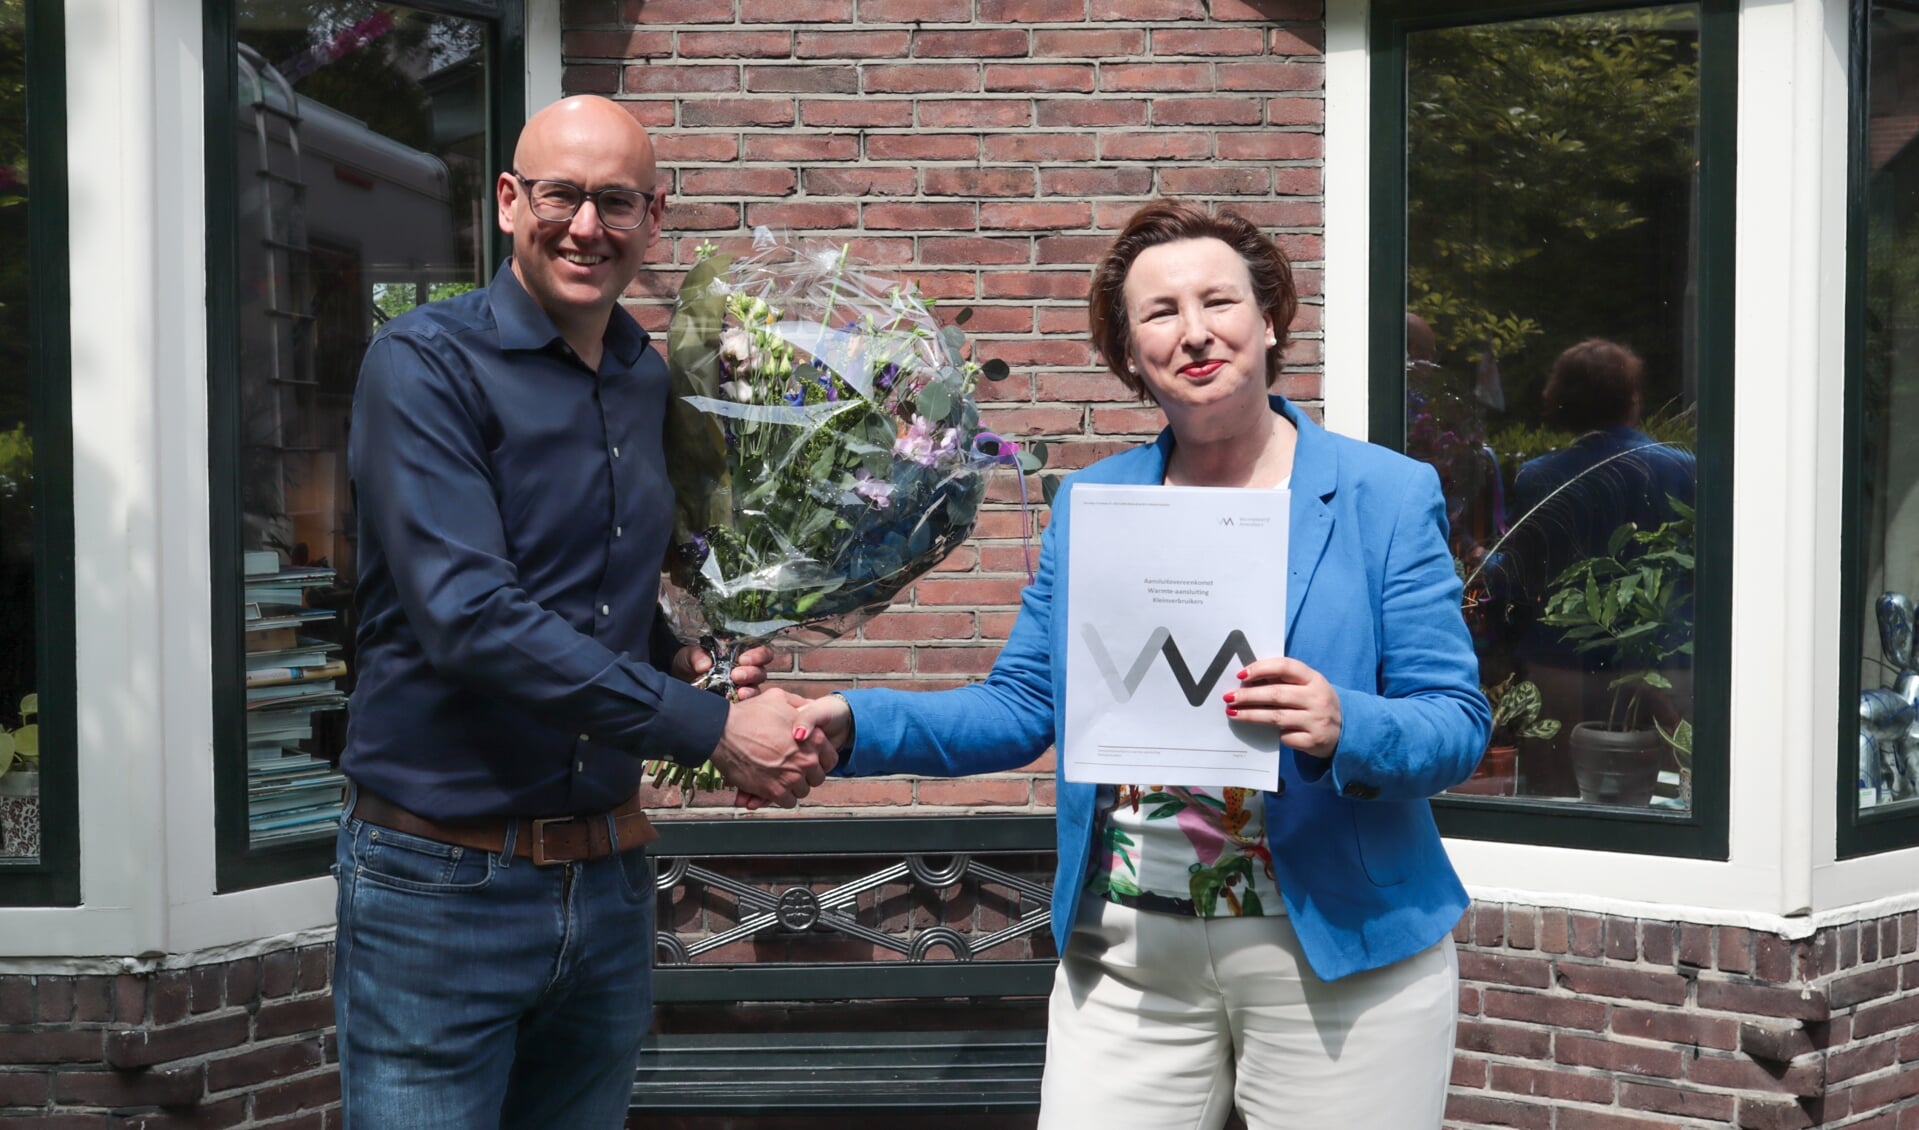 Dhr. Tjoonk uit de Kattekampen ontving als twintigste inschrijver een bosje bloemen van regiodirecteur
Anita van den Berg.